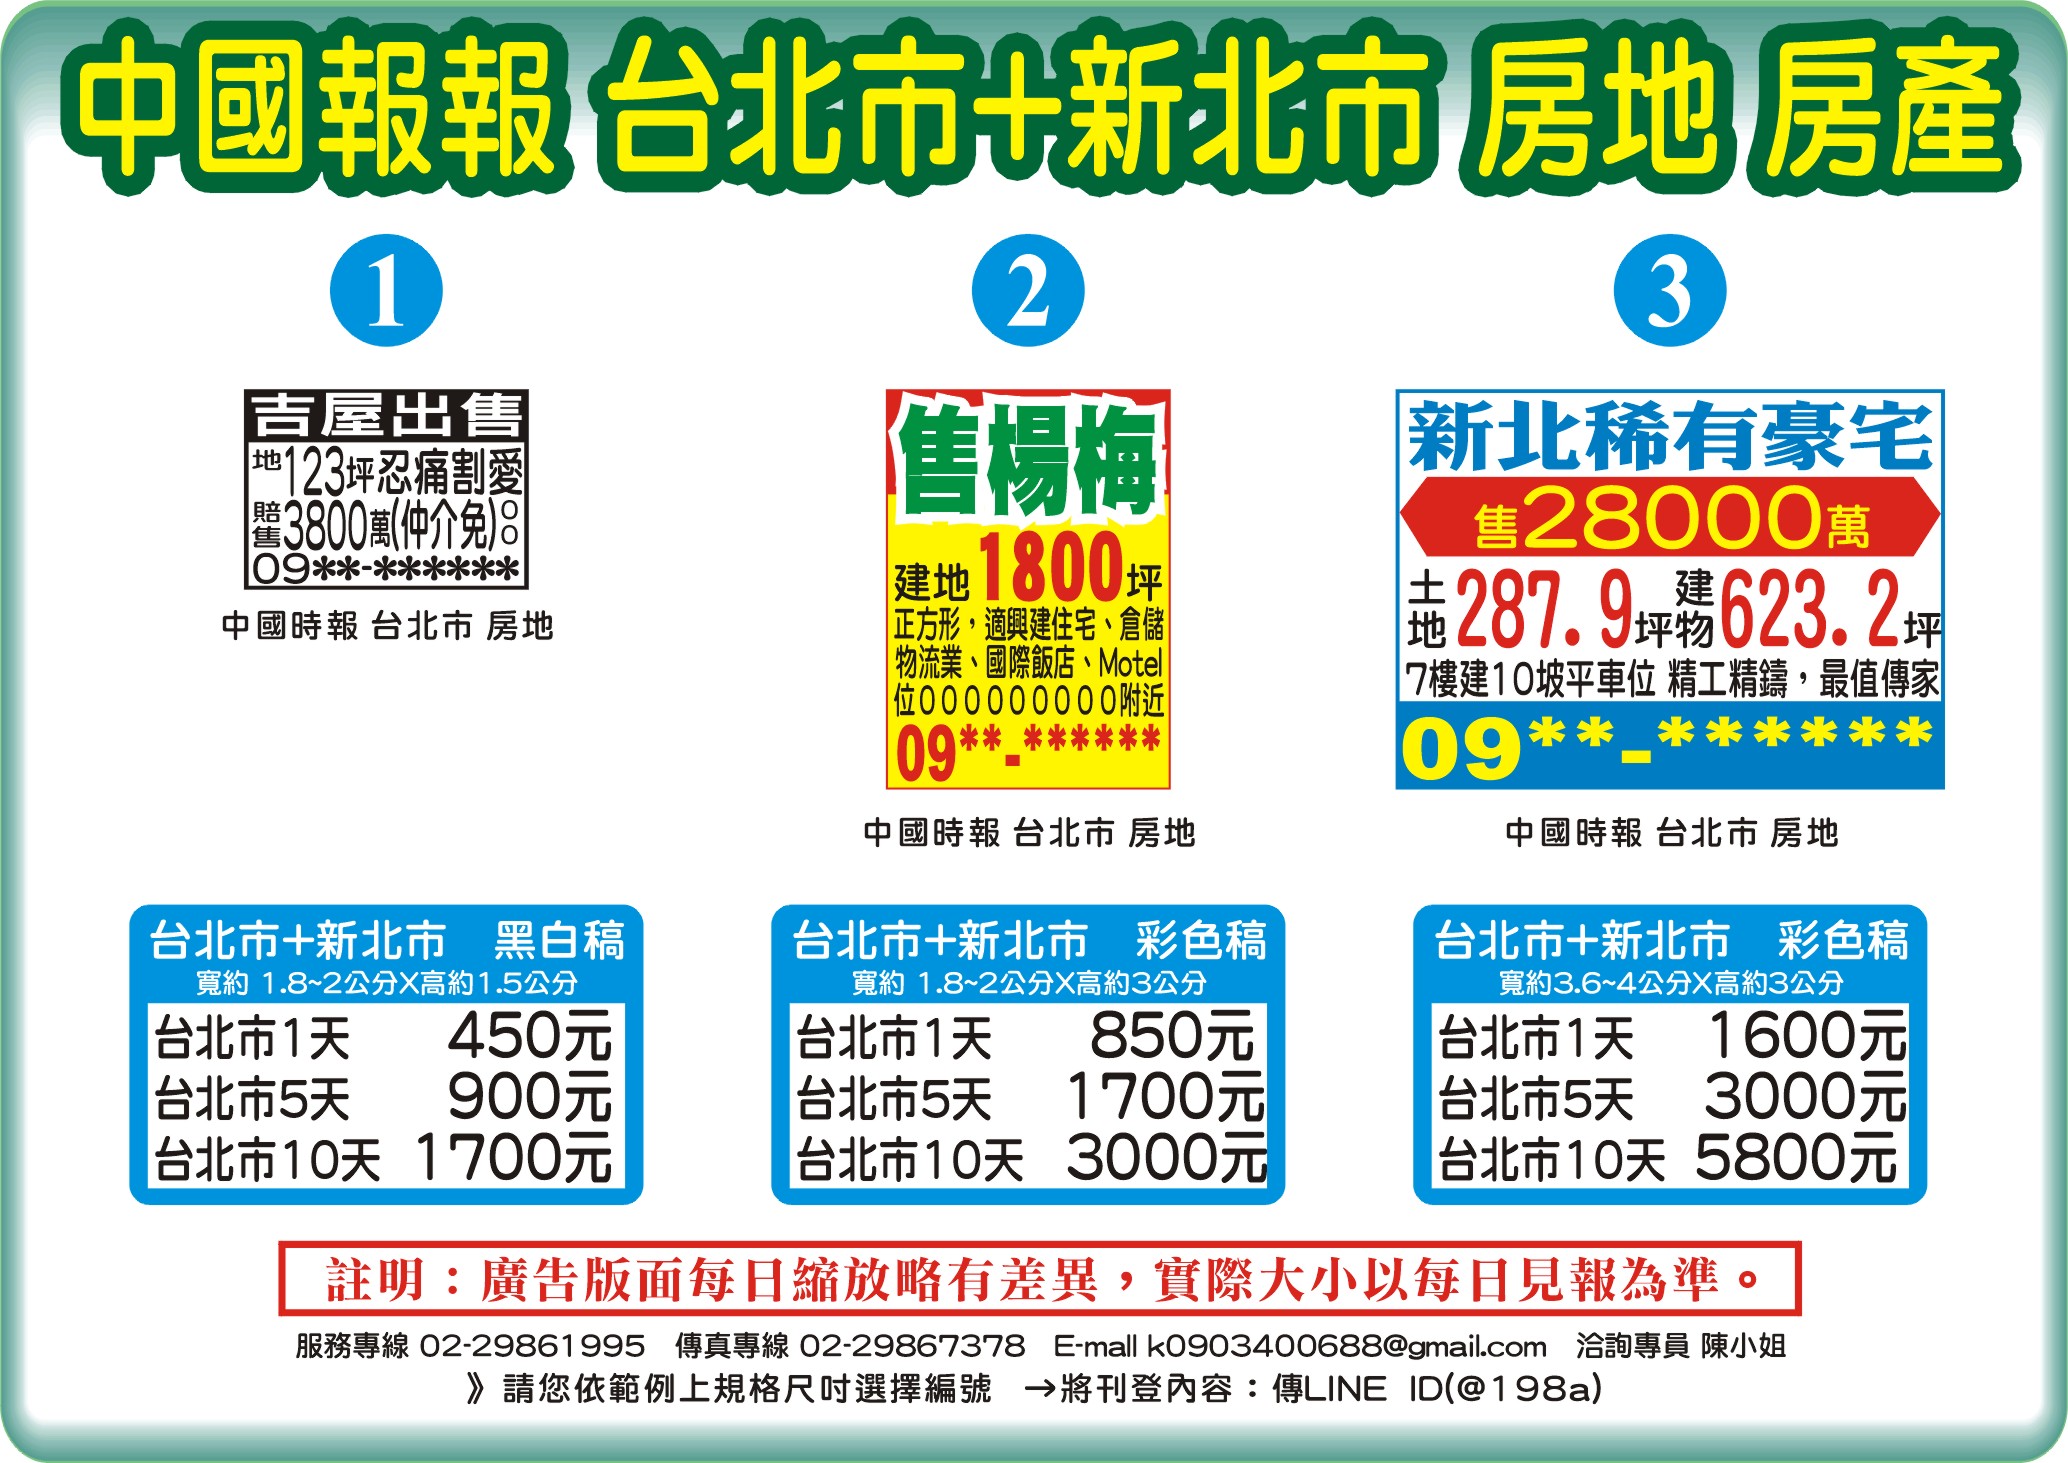 中國時報-房地房產-台北市+新北市-說明報價範例圖片